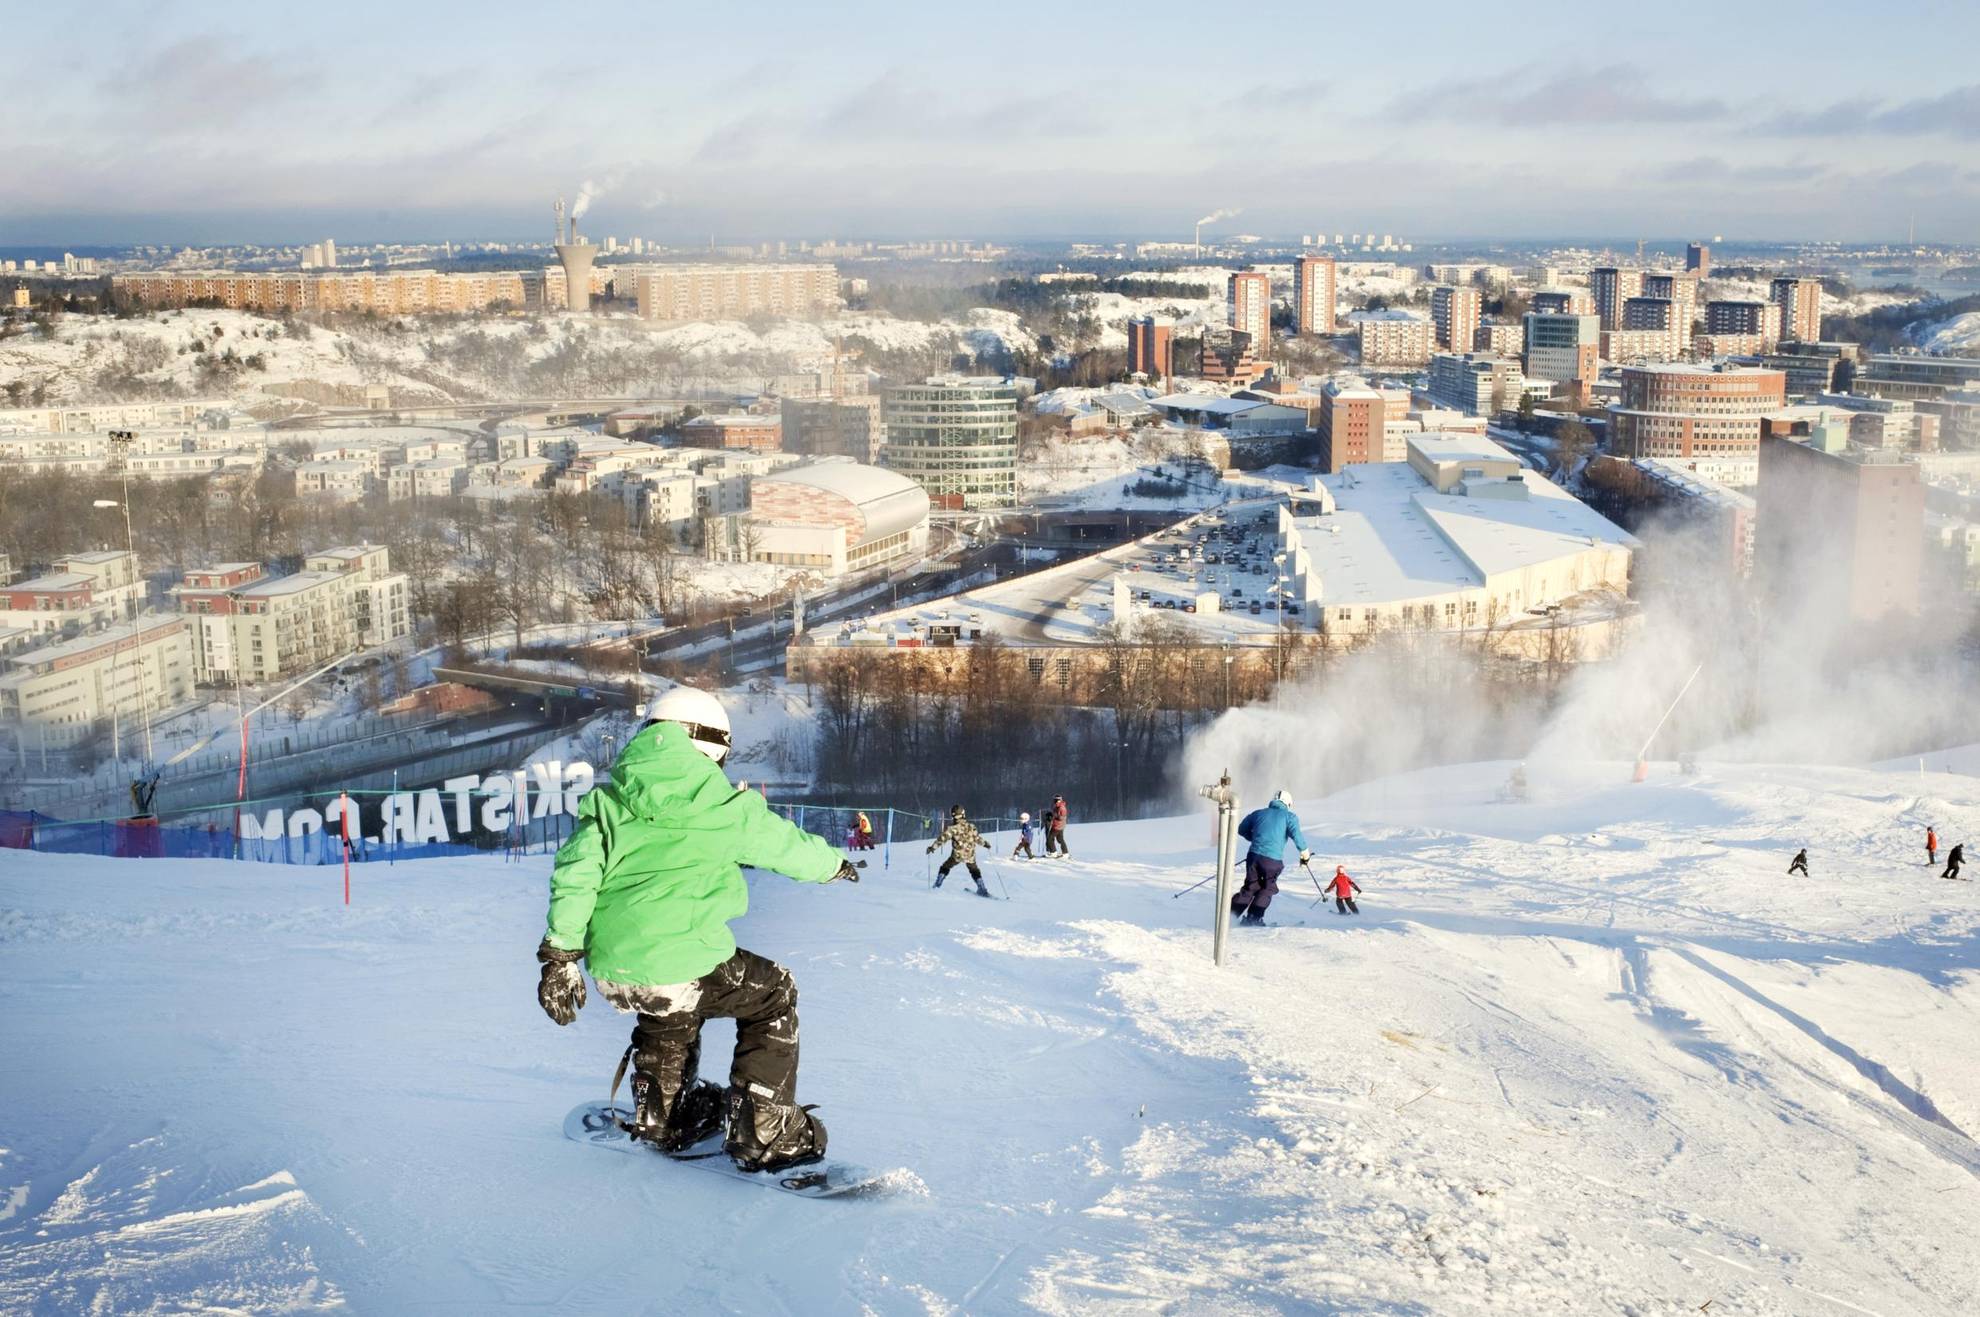 Mensen gaan op ski's en snowboards de hellingen van Hammarbybacken af en kijken uit over het centrum van Stockholm.